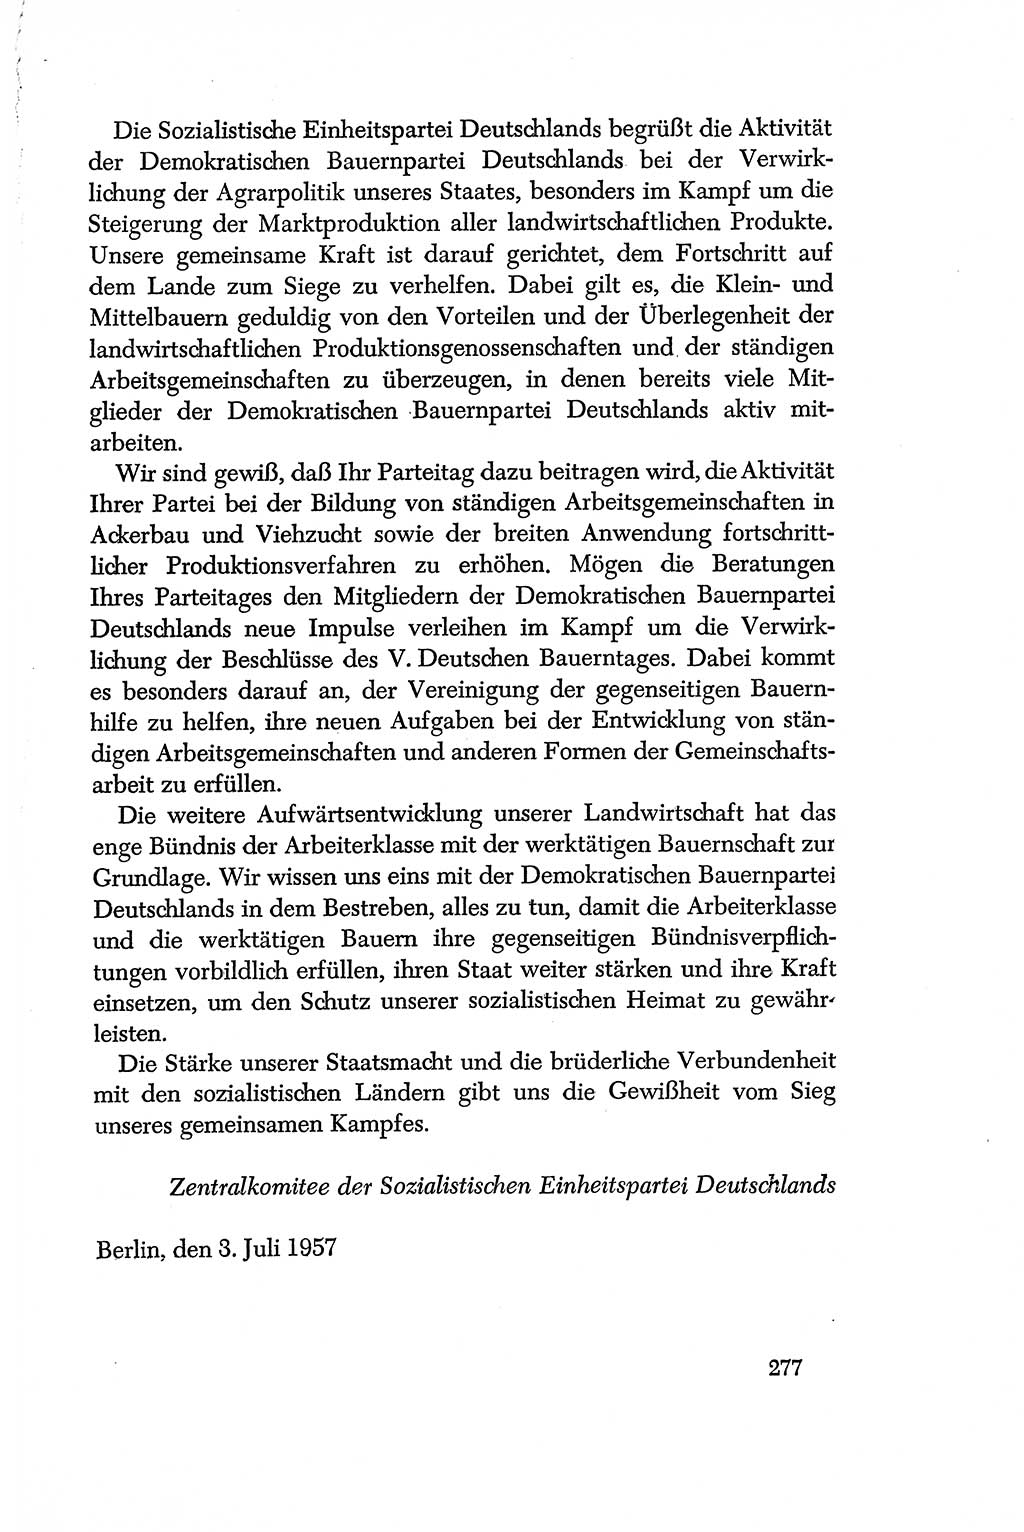 Dokumente der Sozialistischen Einheitspartei Deutschlands (SED) [Deutsche Demokratische Republik (DDR)] 1956-1957, Seite 277 (Dok. SED DDR 1956-1957, S. 277)